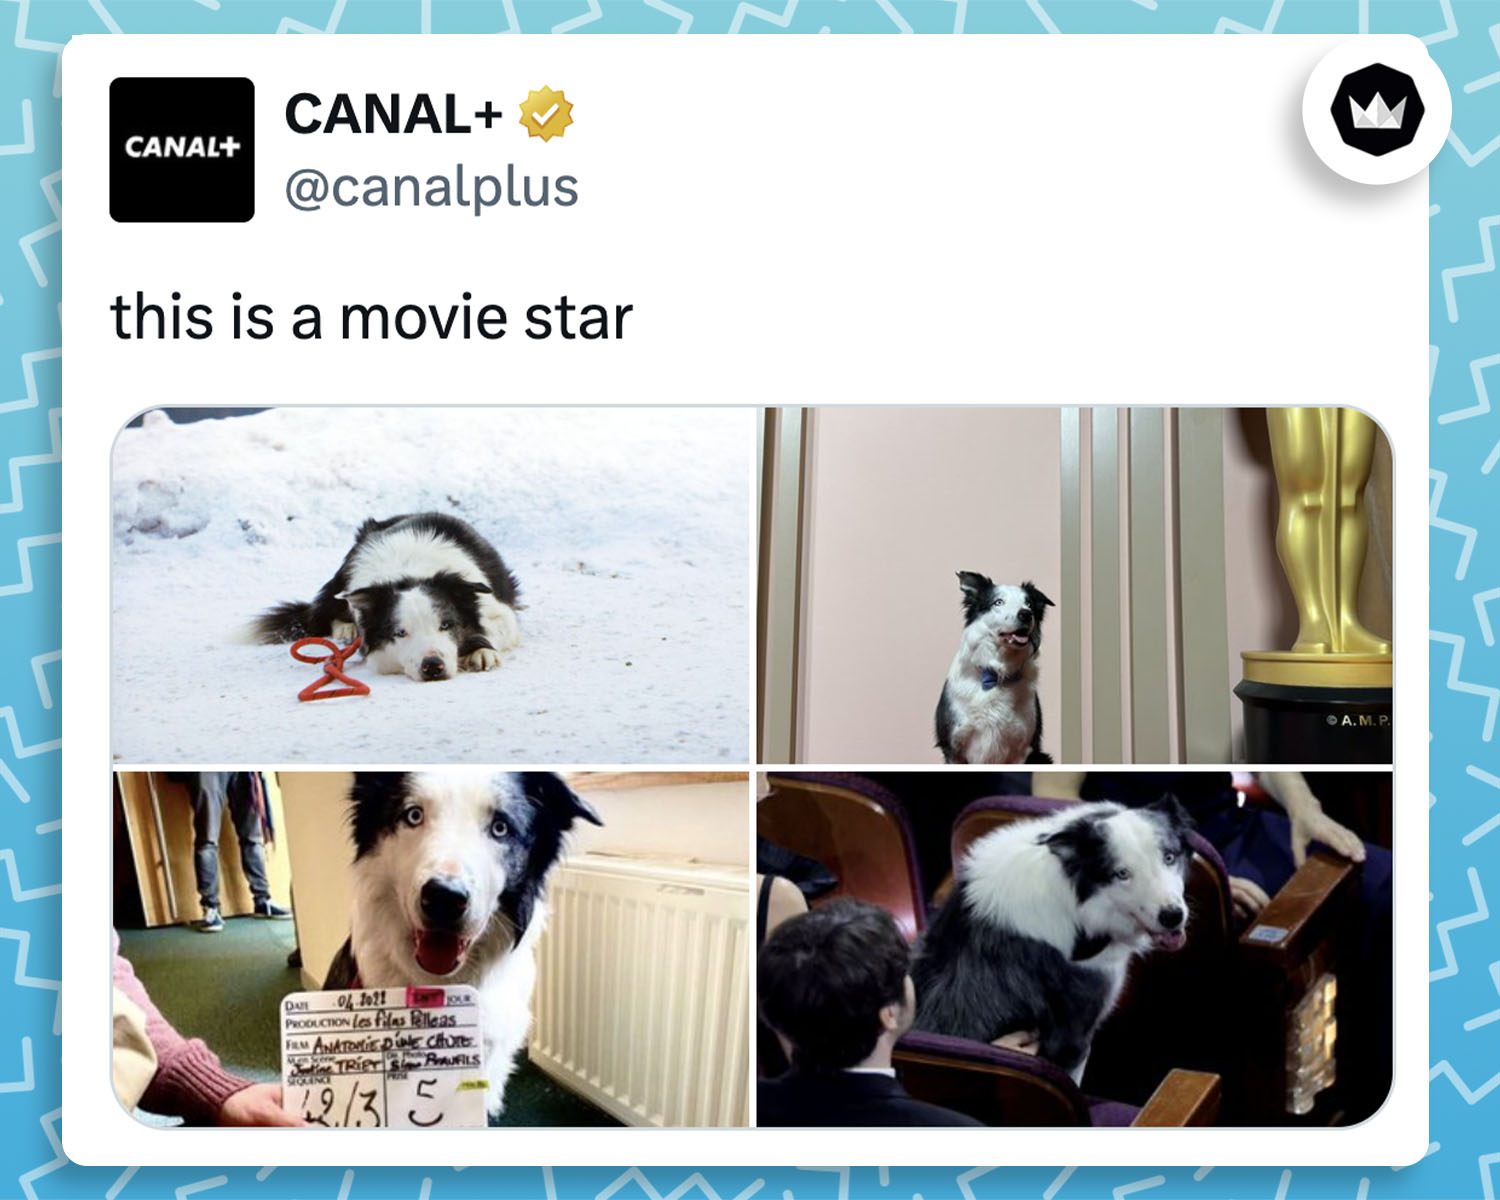 Canalplus : 
"This is a movie star"
avec 4 photos de Messi, le chien qui a joué dans "Anatomie d'une chute".